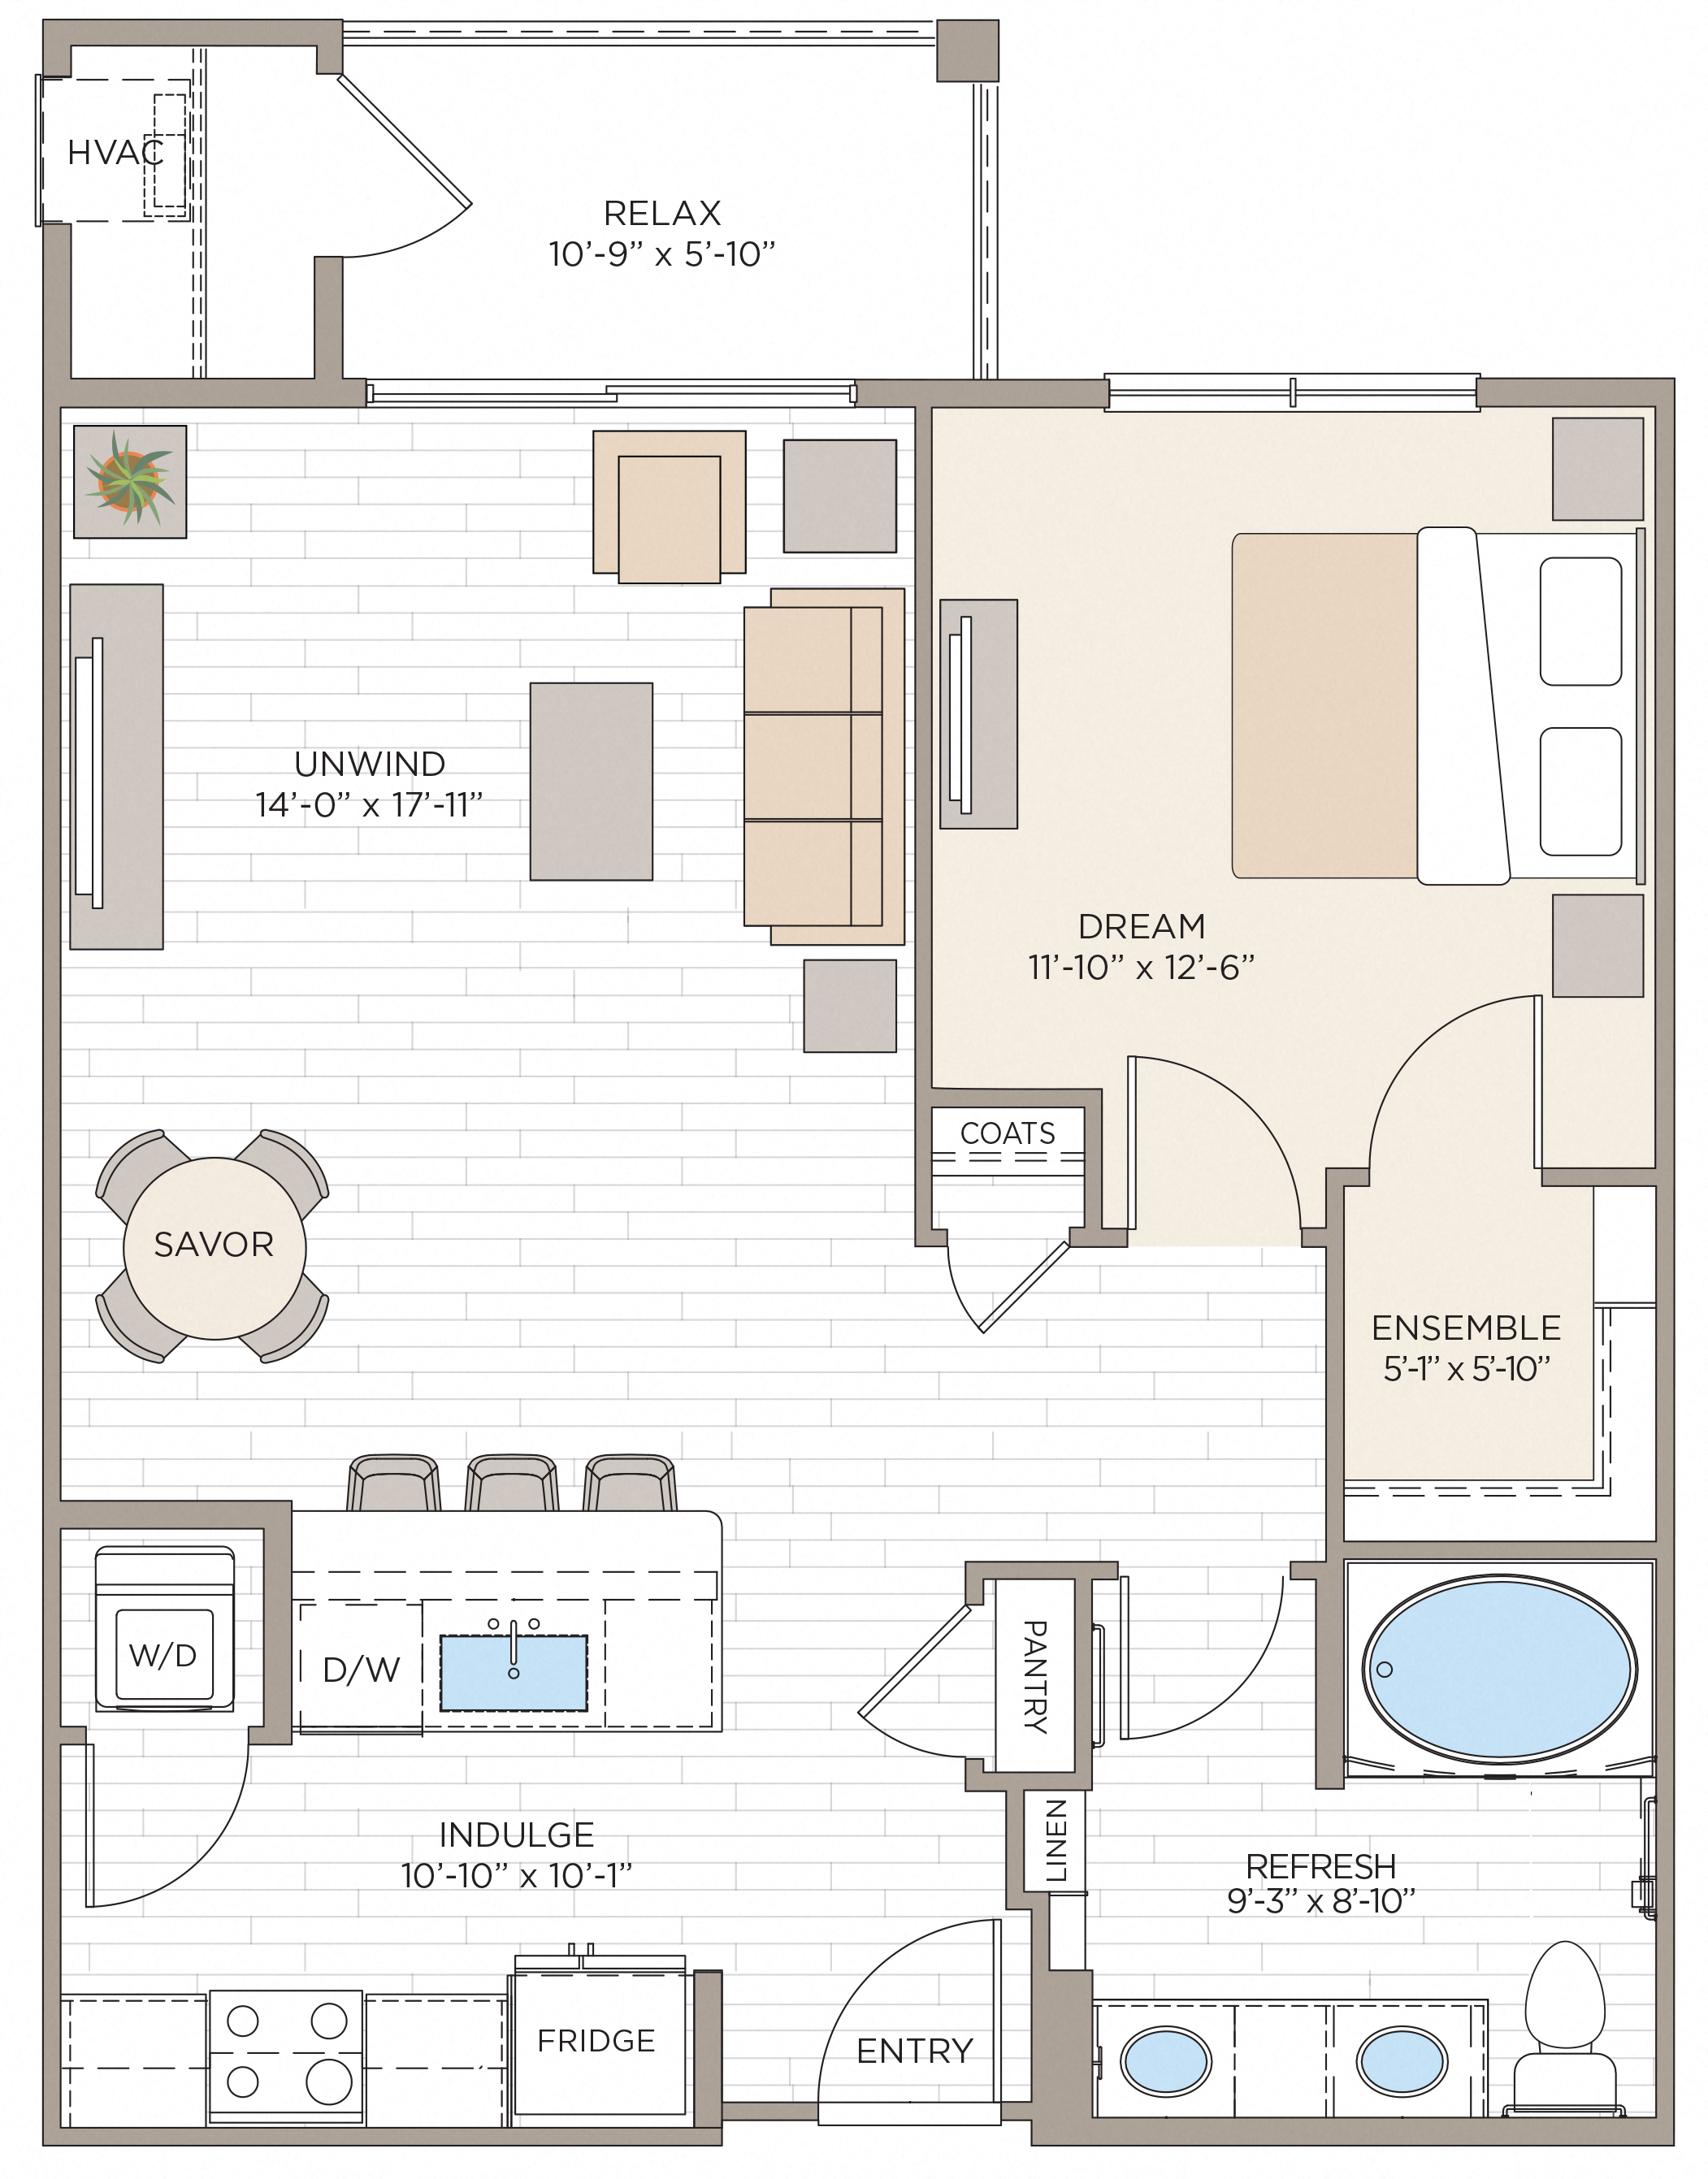 Floorplan for Apartment #14316, 1 bedroom unit at Halstead Maynard Crossing